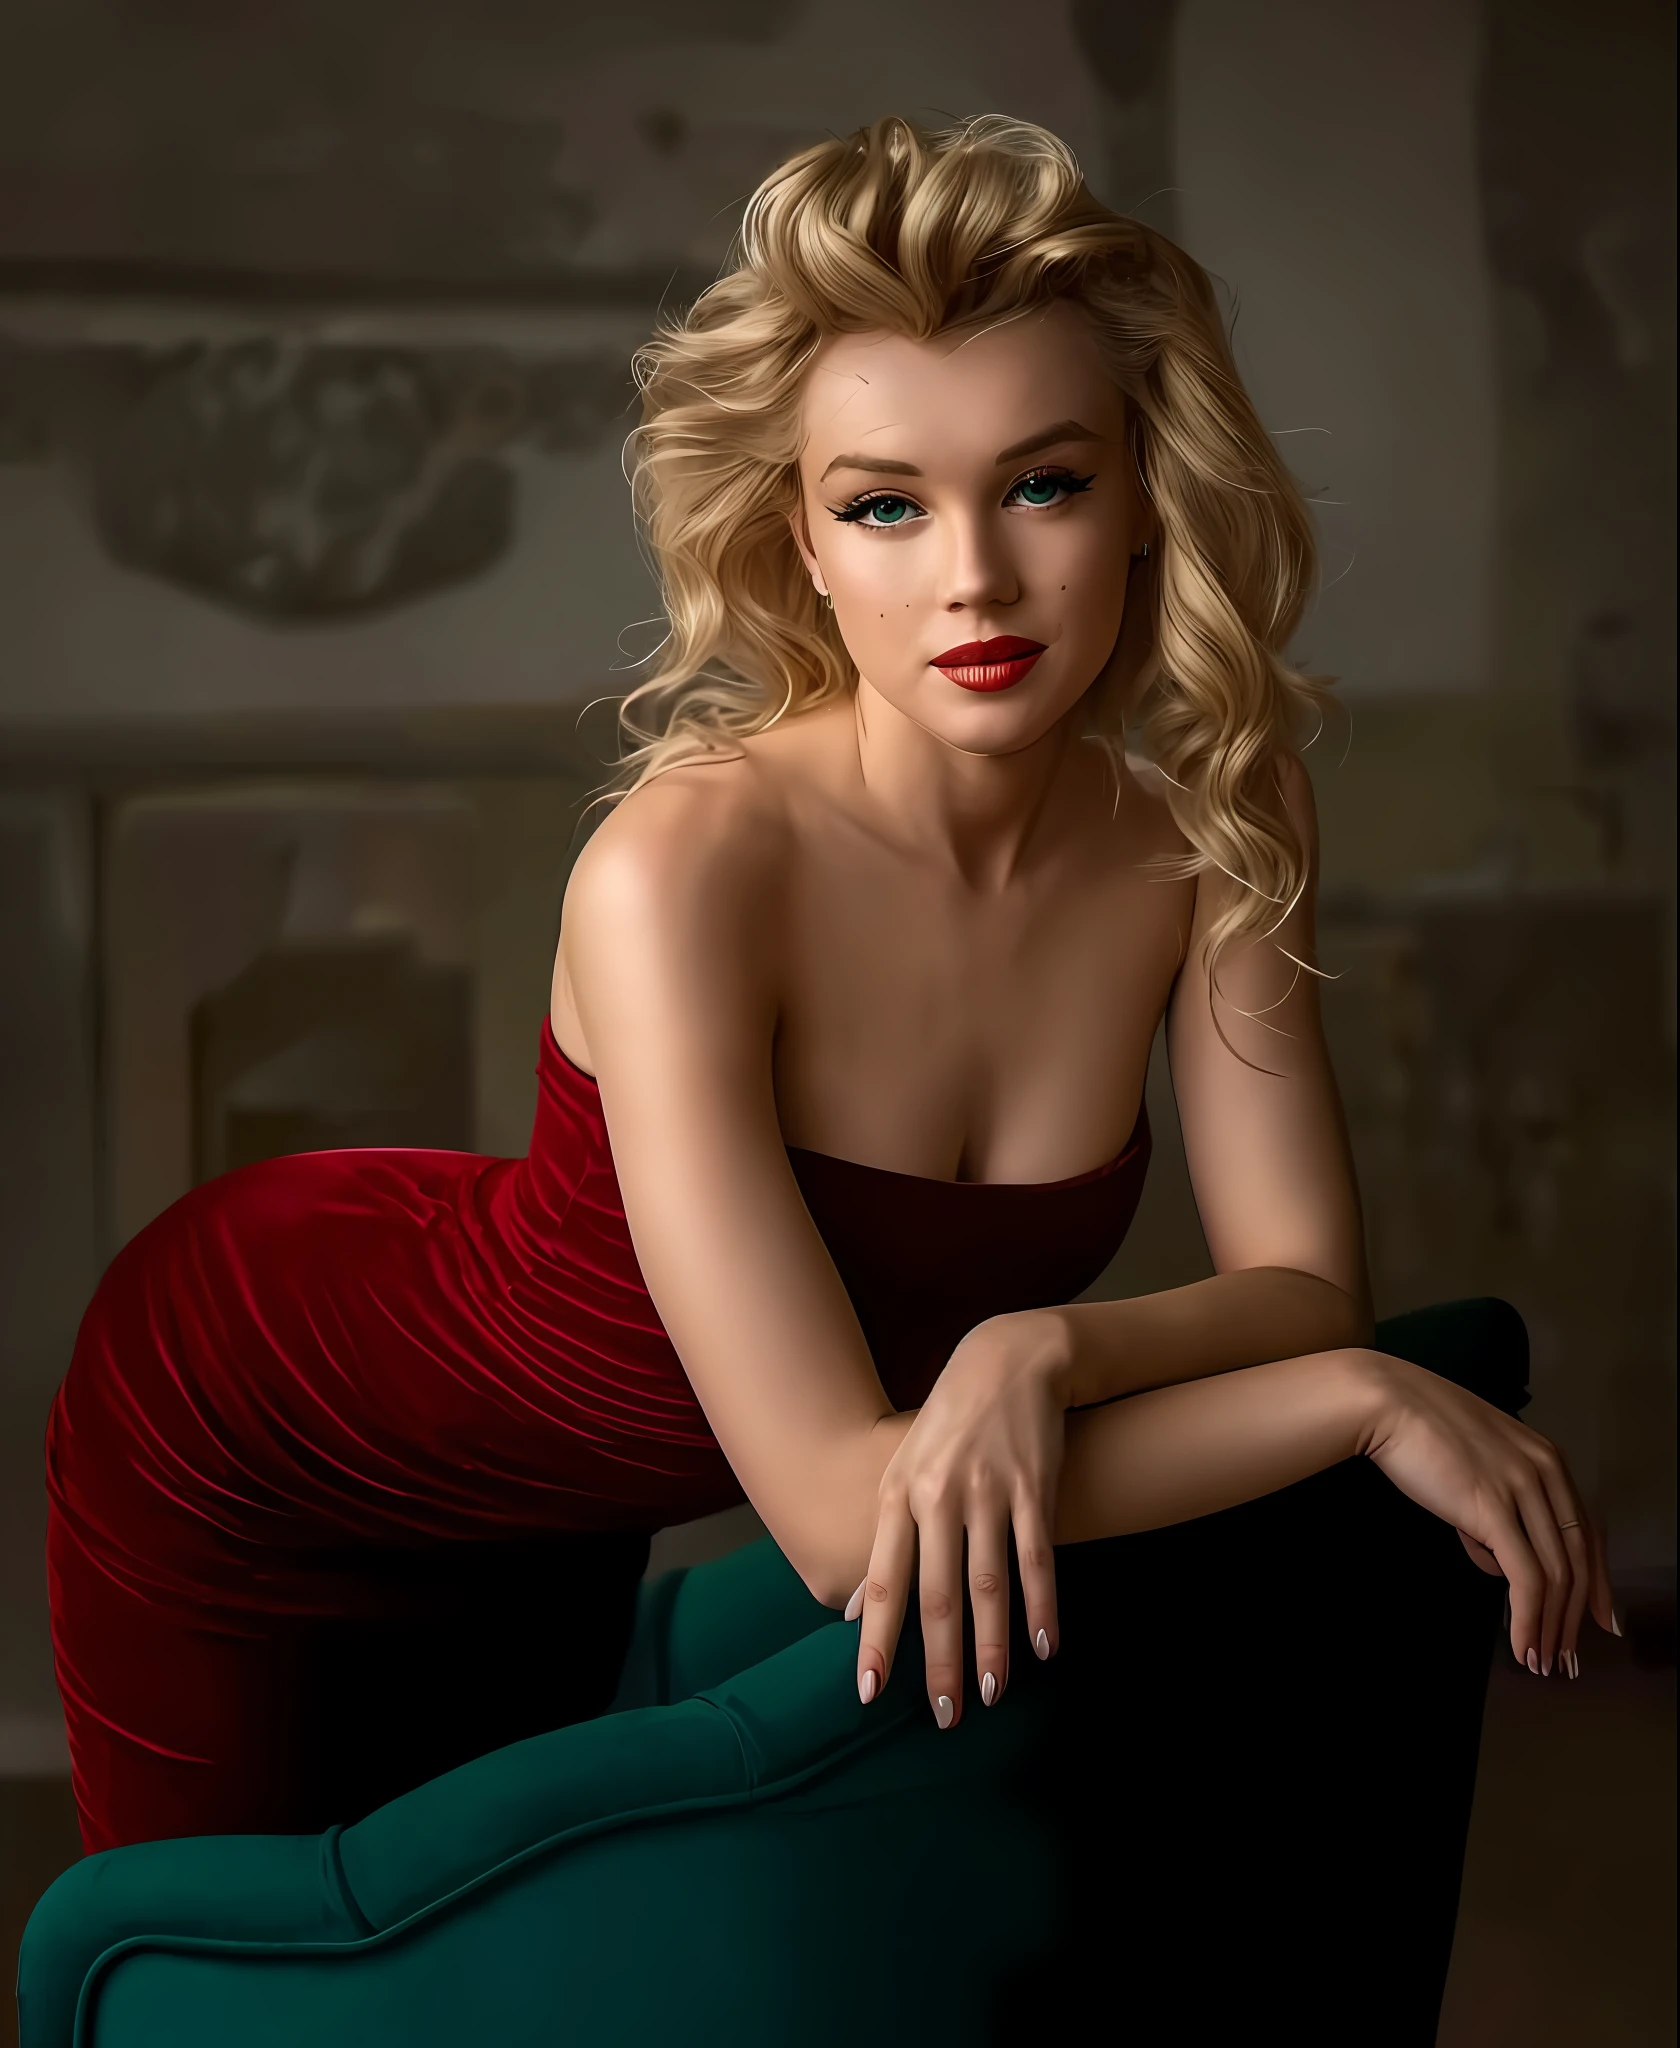 Marilyn Monroe com vestido vermelho sentada em uma cadeira verde em uma sala, foto de uma linda mulher, pose elegante deslumbrante, Mulher adorável, mulher atraente, Yelena Belova, Linda Marilyn Monroe , linda mulher, linda mulher loira, linda linda mulher, pose de glamour, mulher muito bonita, linda modelo feminina, linda garota modelo, jovem muito bonita, linda garota loira